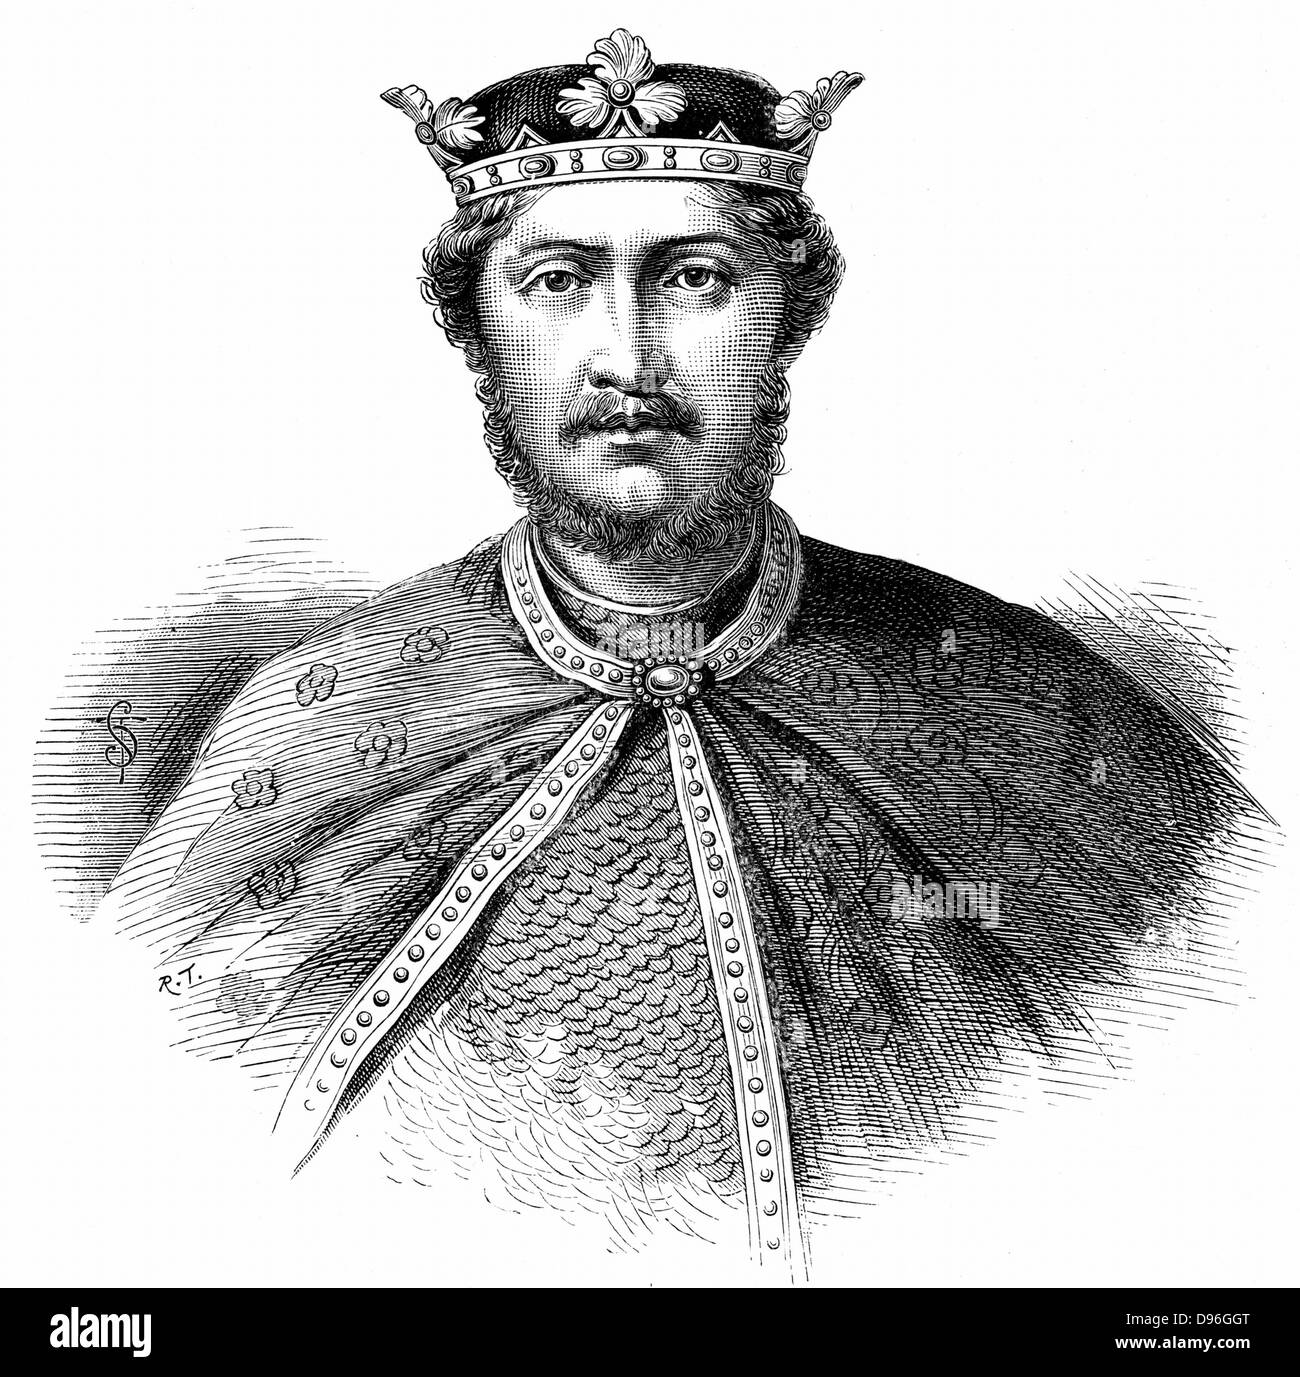 Richard I, Coeur de Lion, (1157-1199) Sohn von Heinrich II. und Eleonore von Aquitanien, regierte als König von England (1189-1199). Die zweite der Anjou (Plantagenet) Könige von England. Holzstich c 1880. Stockfoto